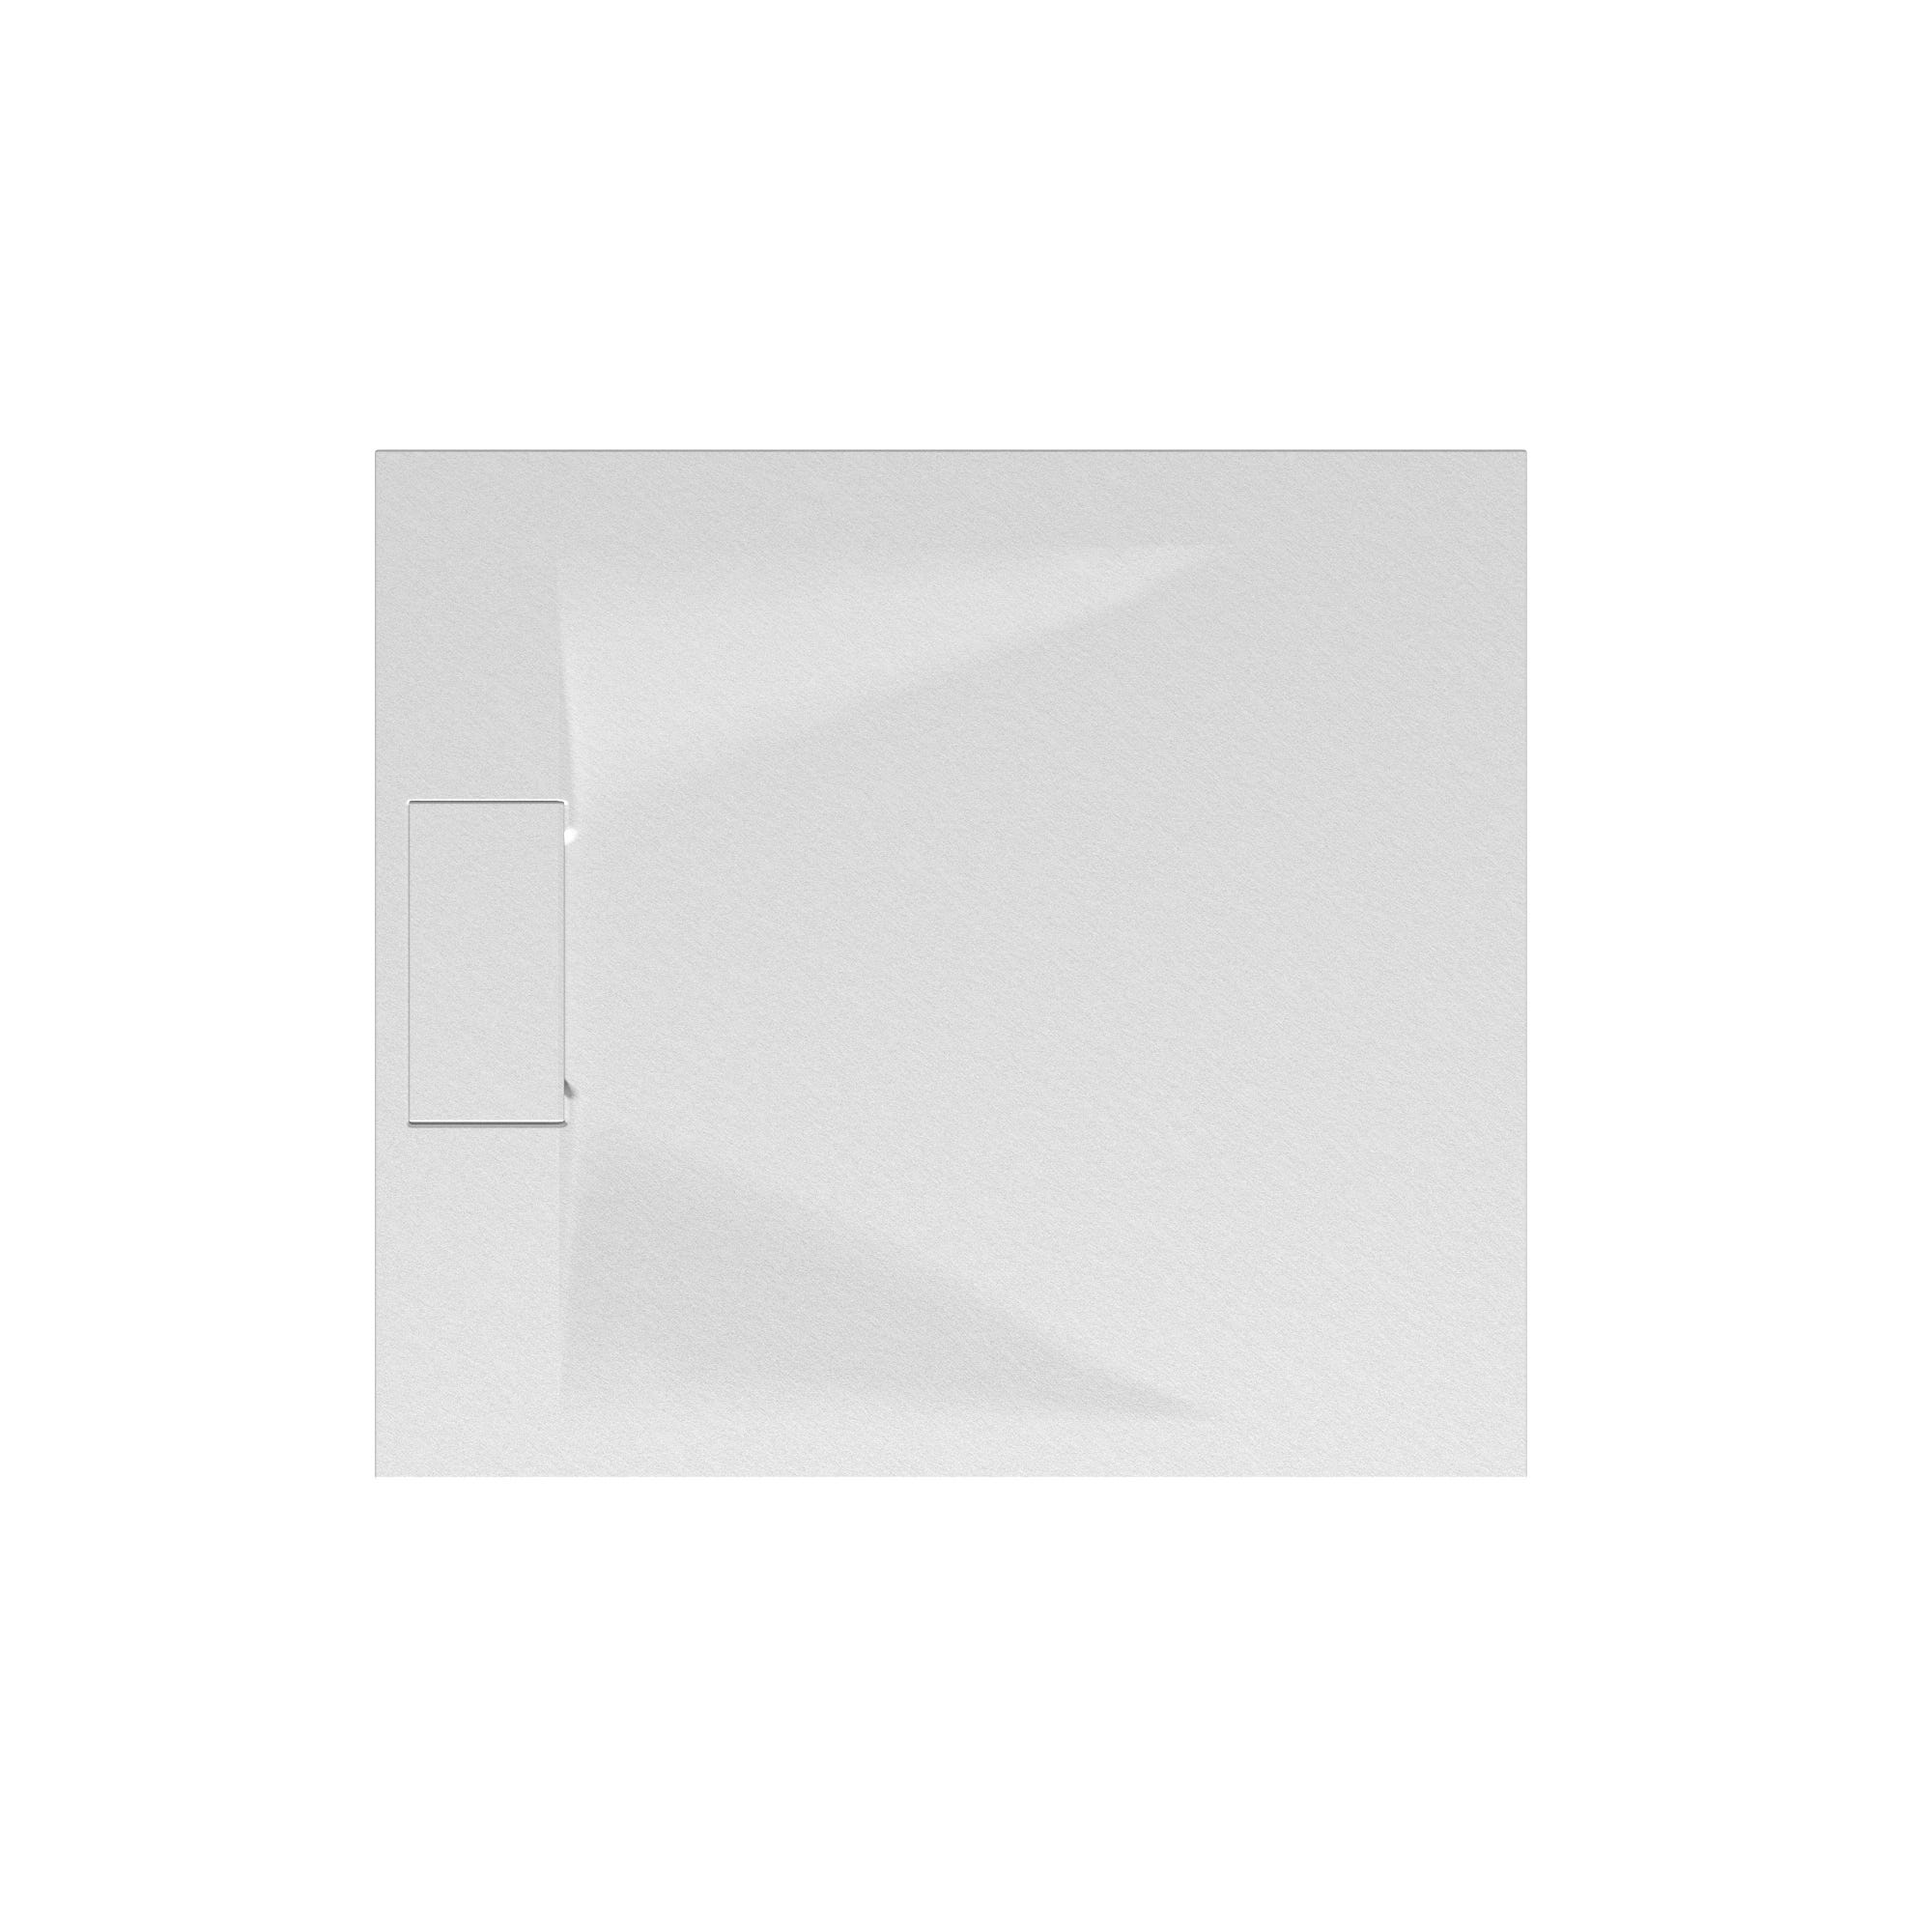 Schulte receveur de douche 80 x 90 x 3,2 cm, blanc effet pierre ultra légers, rectangulaire, extra plat à poser ou à encastrer, bac à douche 1